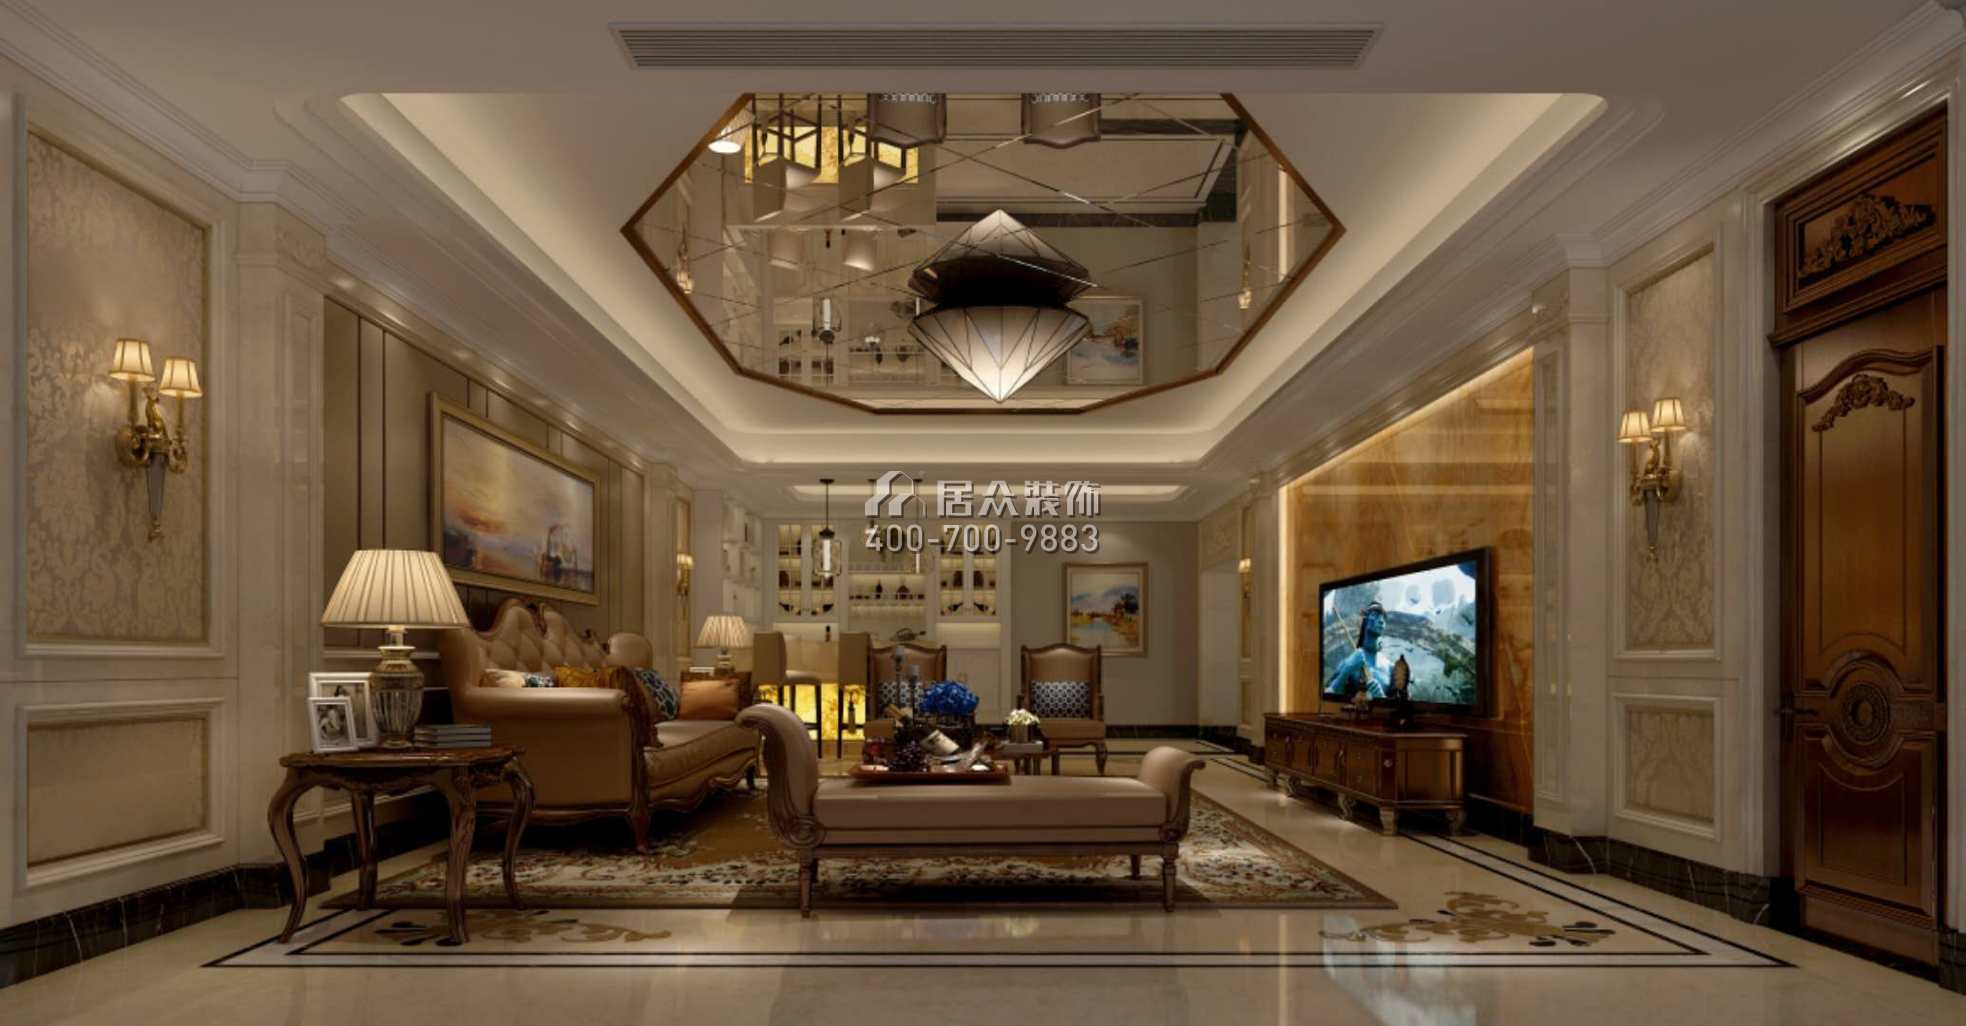 碧桂園太陽城405平方米歐式風格別墅戶型客廳裝修效果圖